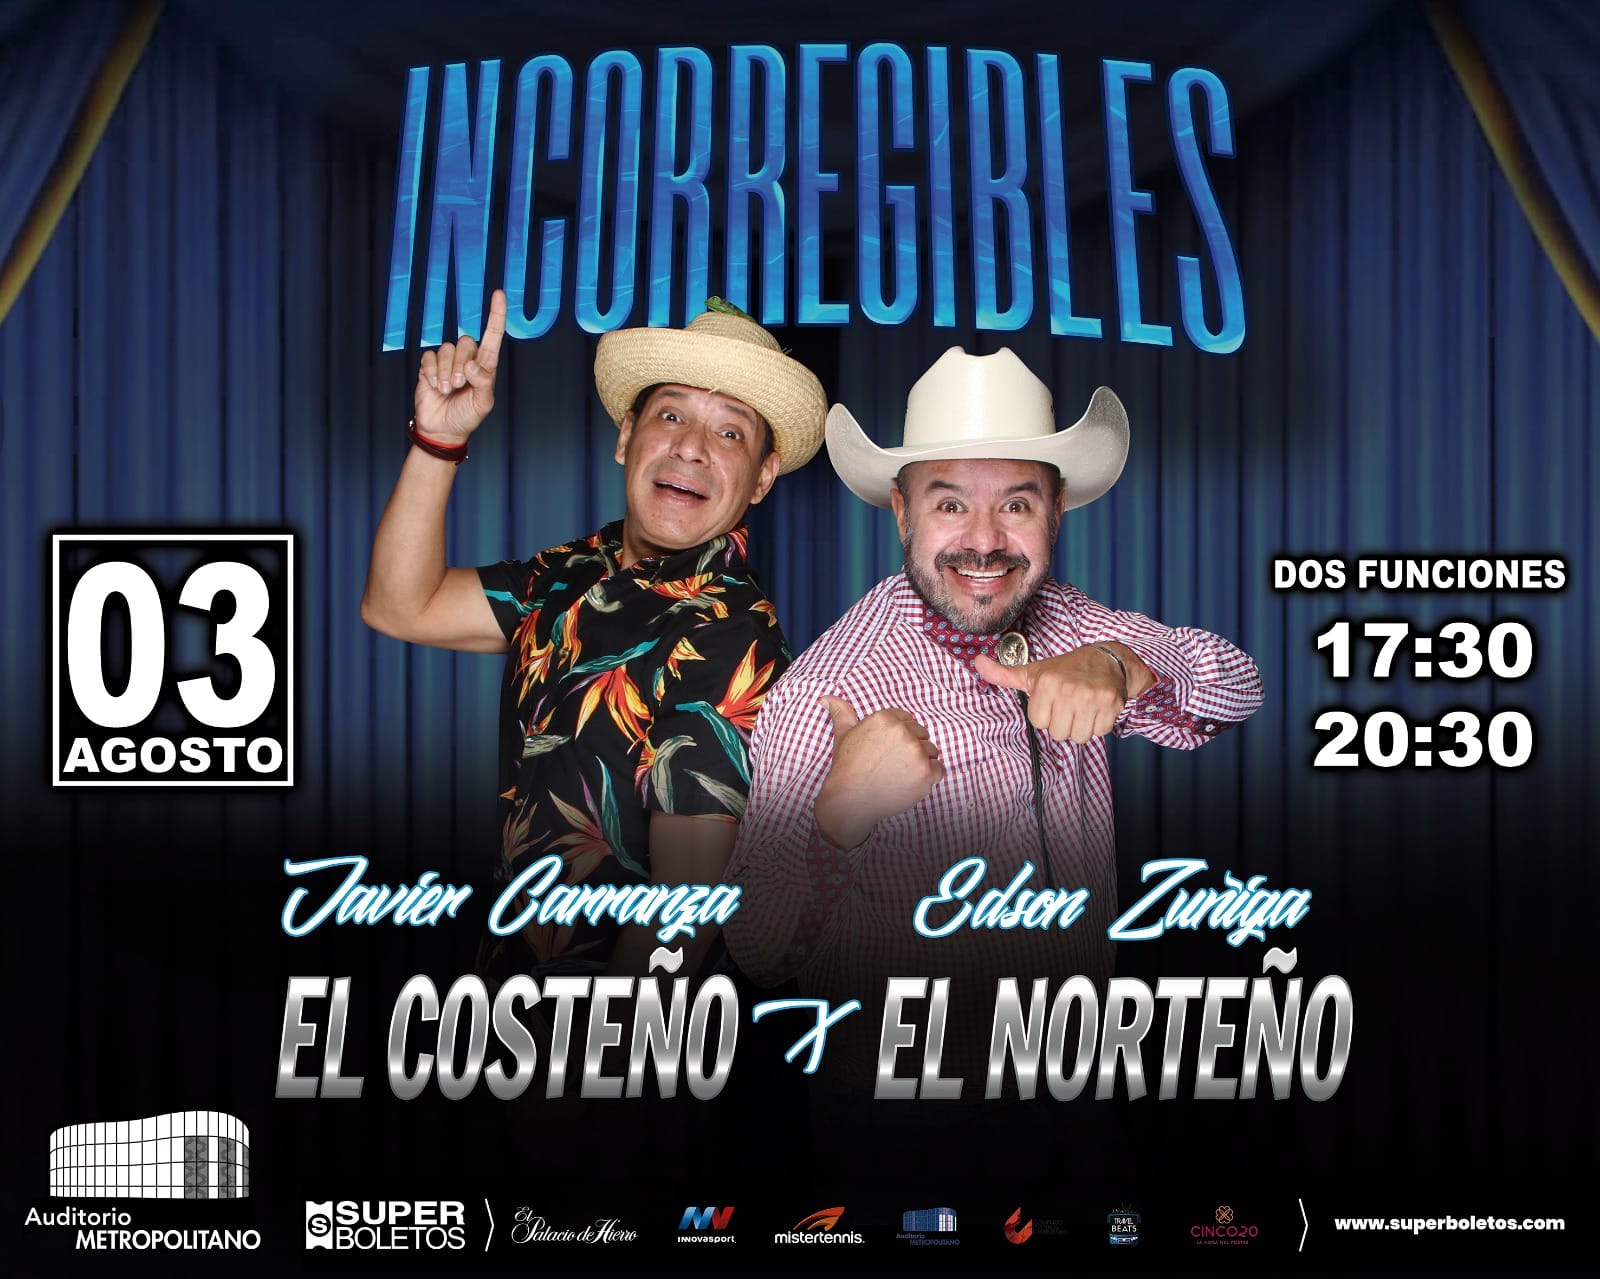 Llega a Puebla el divertidísimo espectáculo “Incorregibles: El Costeño y El Norteño”